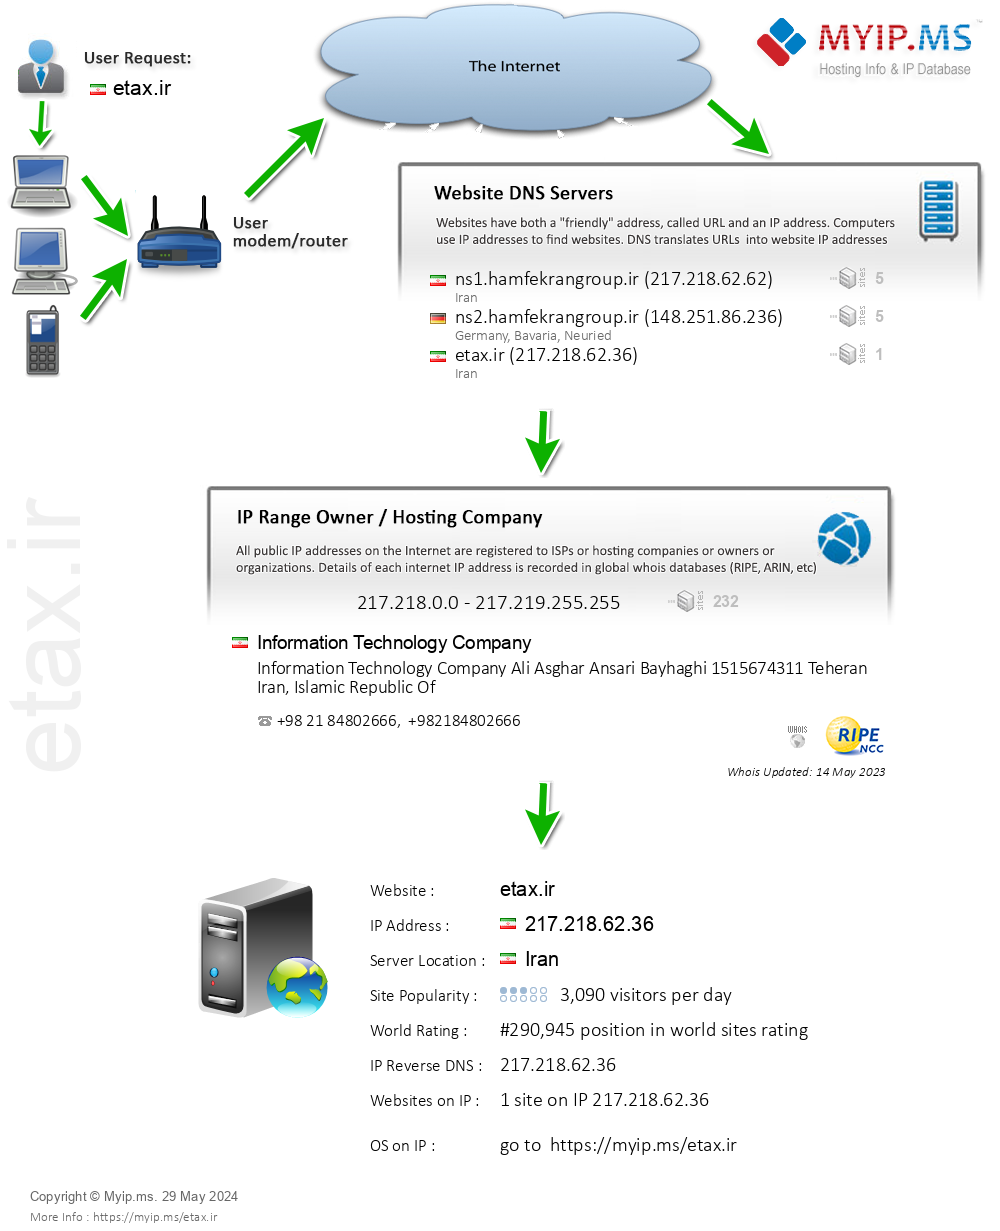 Etax.ir - Website Hosting Visual IP Diagram